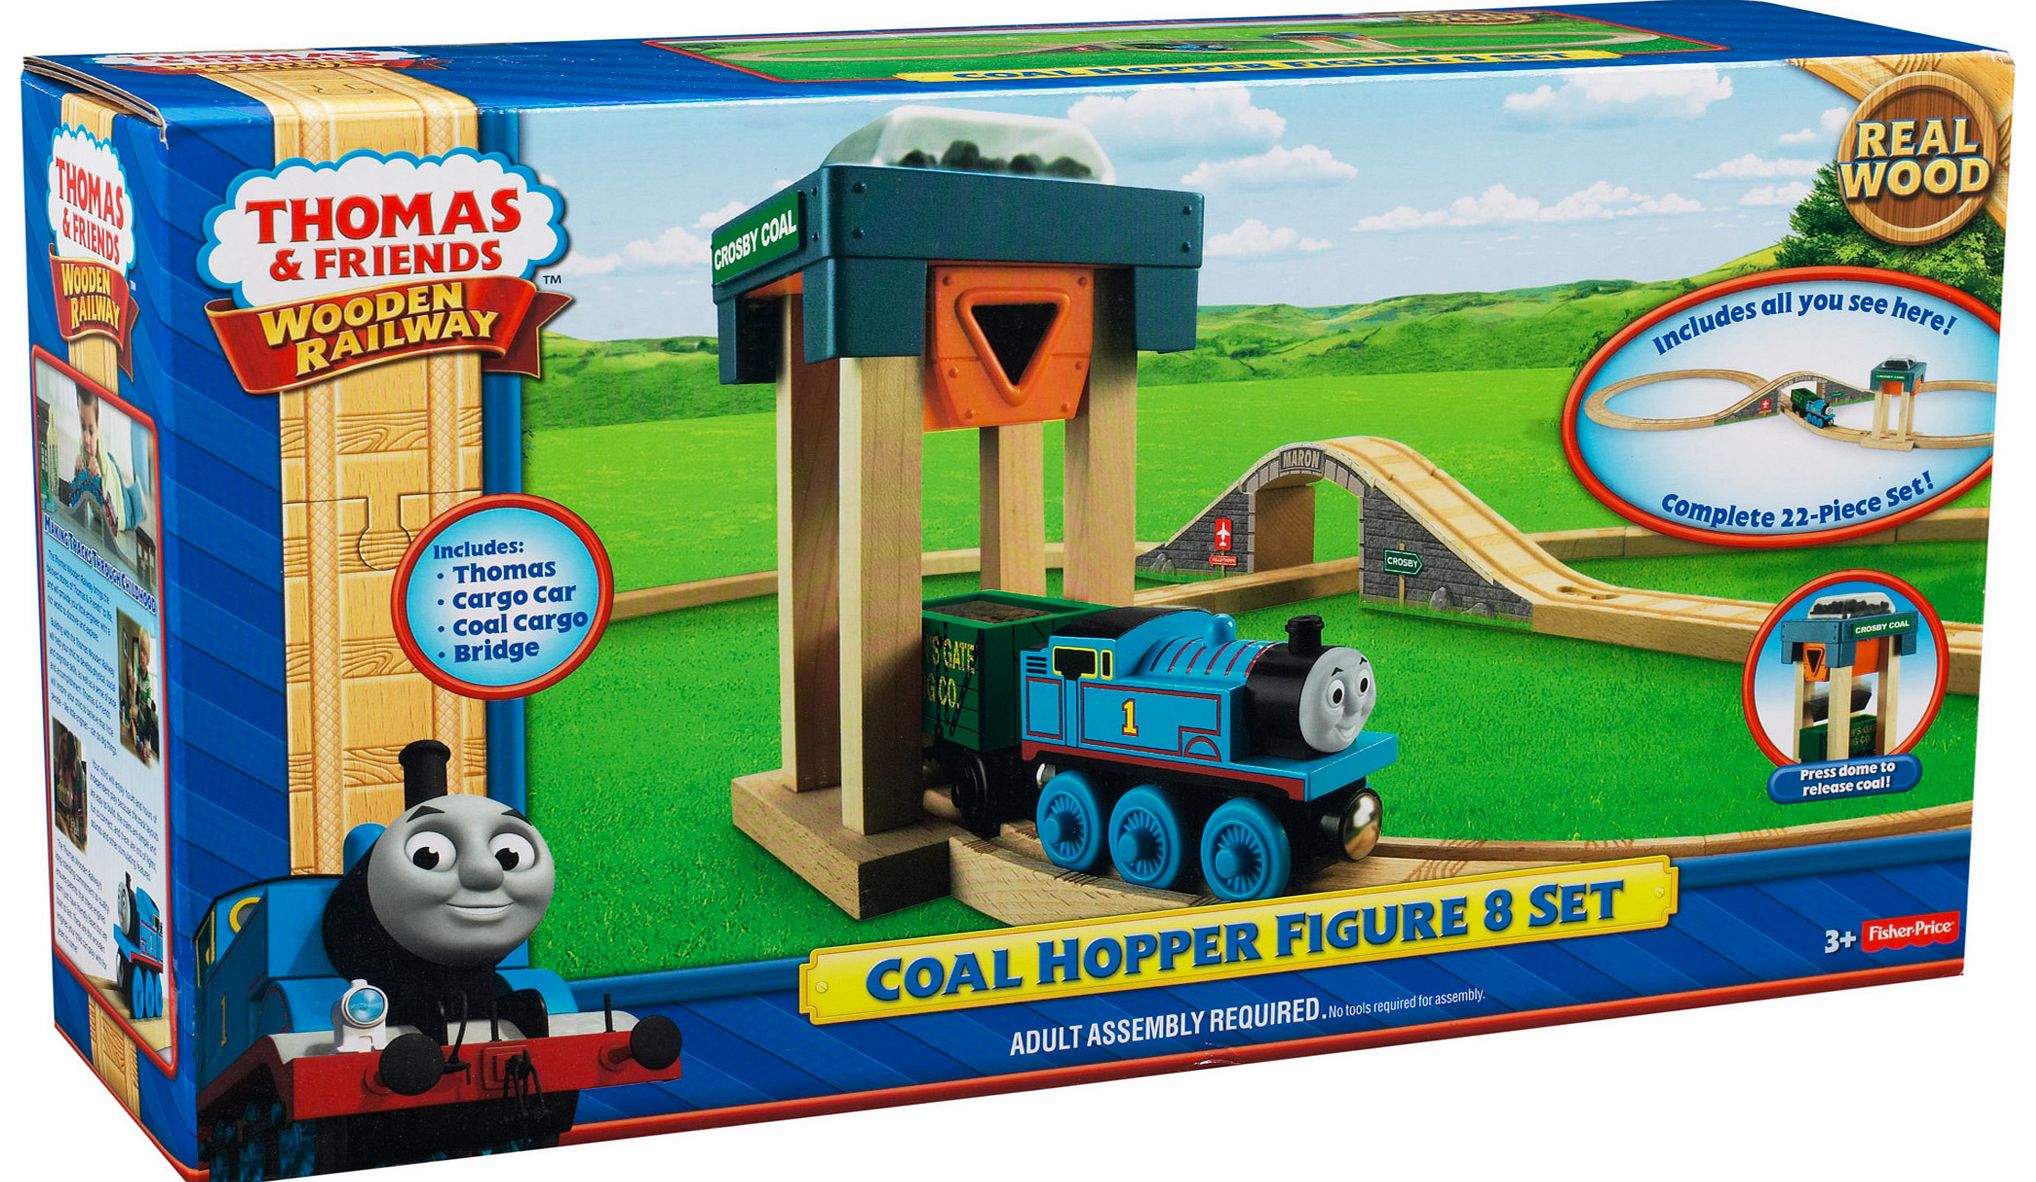 Wooden Railway Coal Hopper